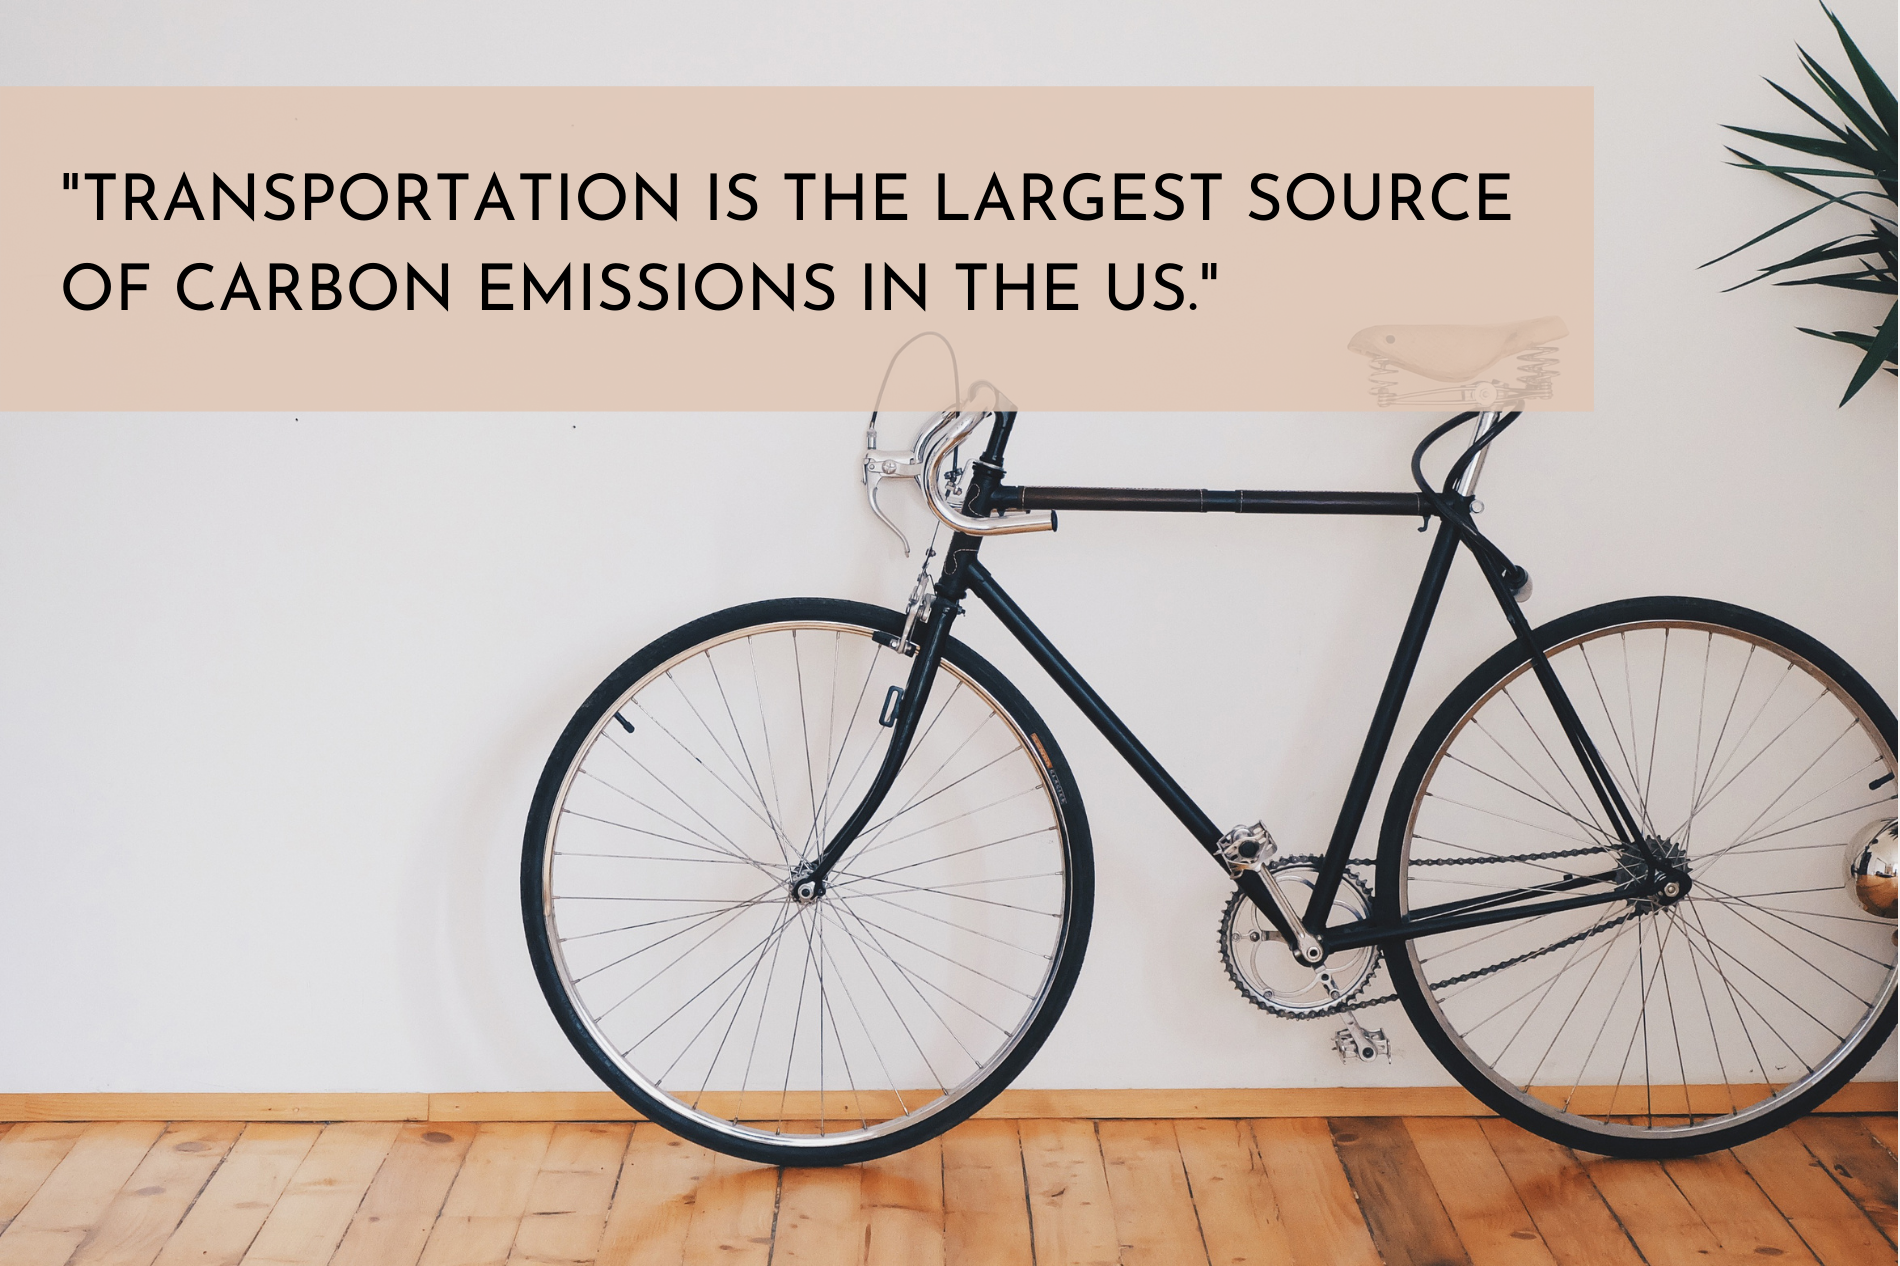 Carbon emissions of transportation